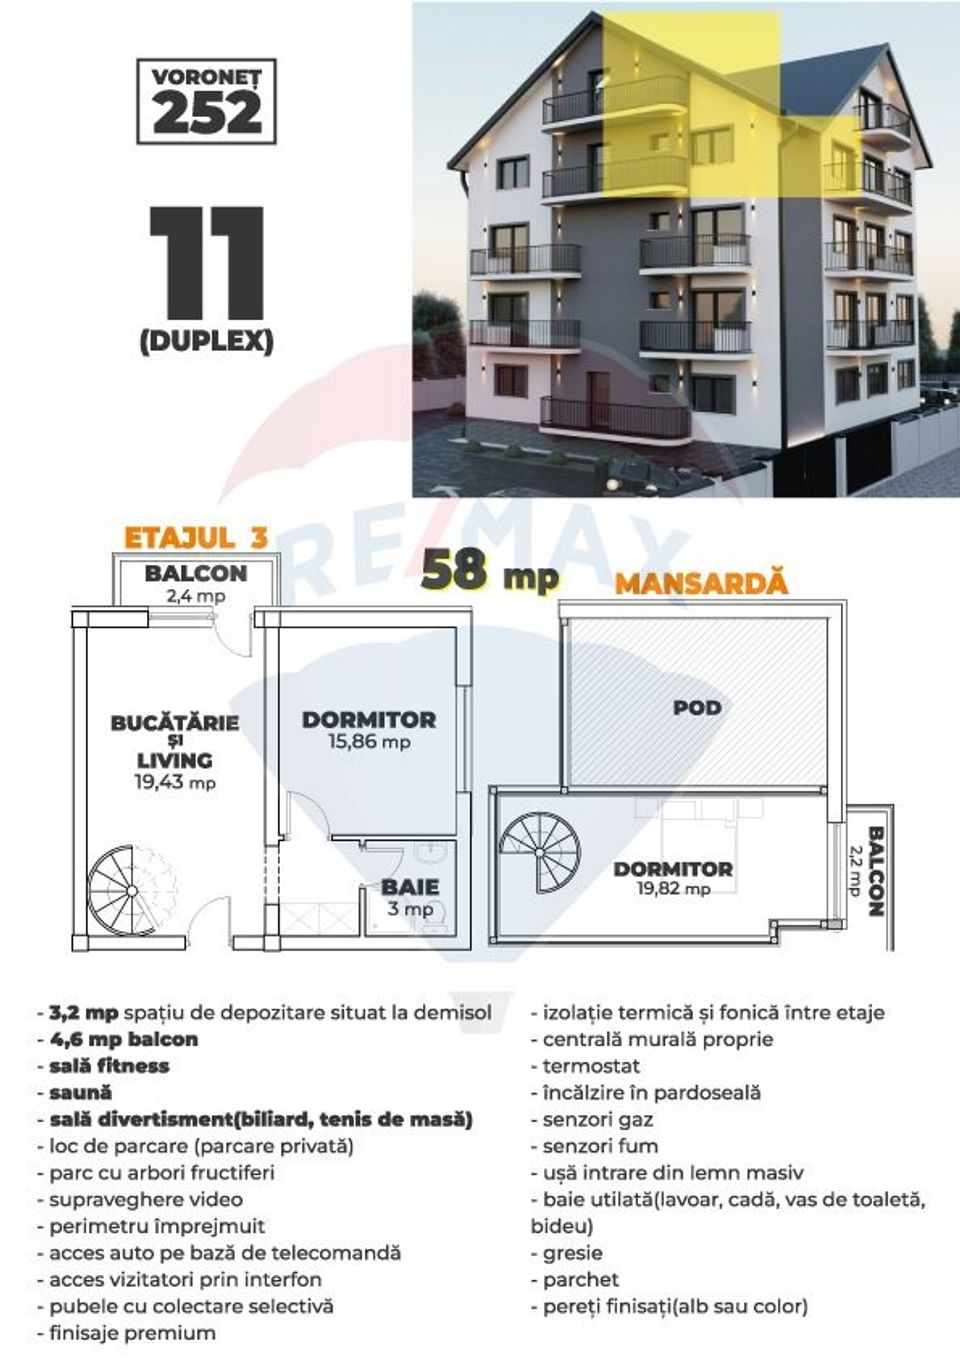 Apartamente LUX de vânzare Voronet 252 - Gura Humorului - Bucovina